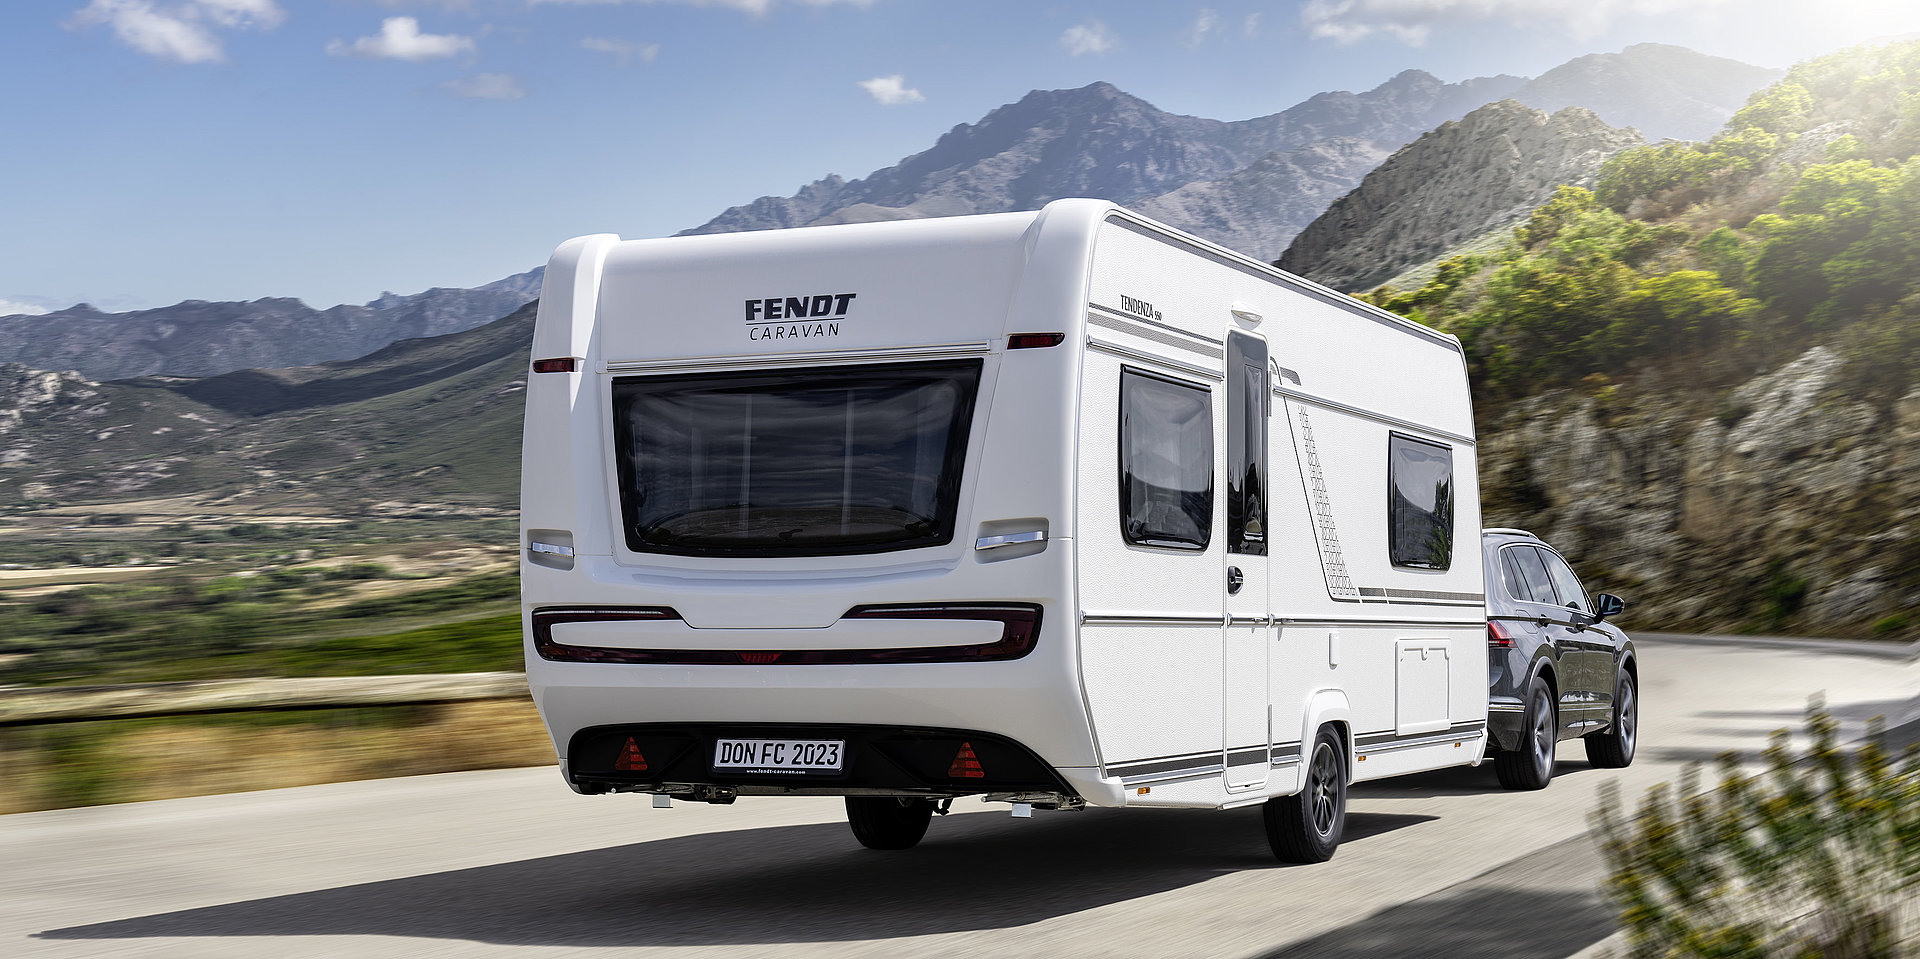 Fendt-Caravan, Wohnwagen von Fendt